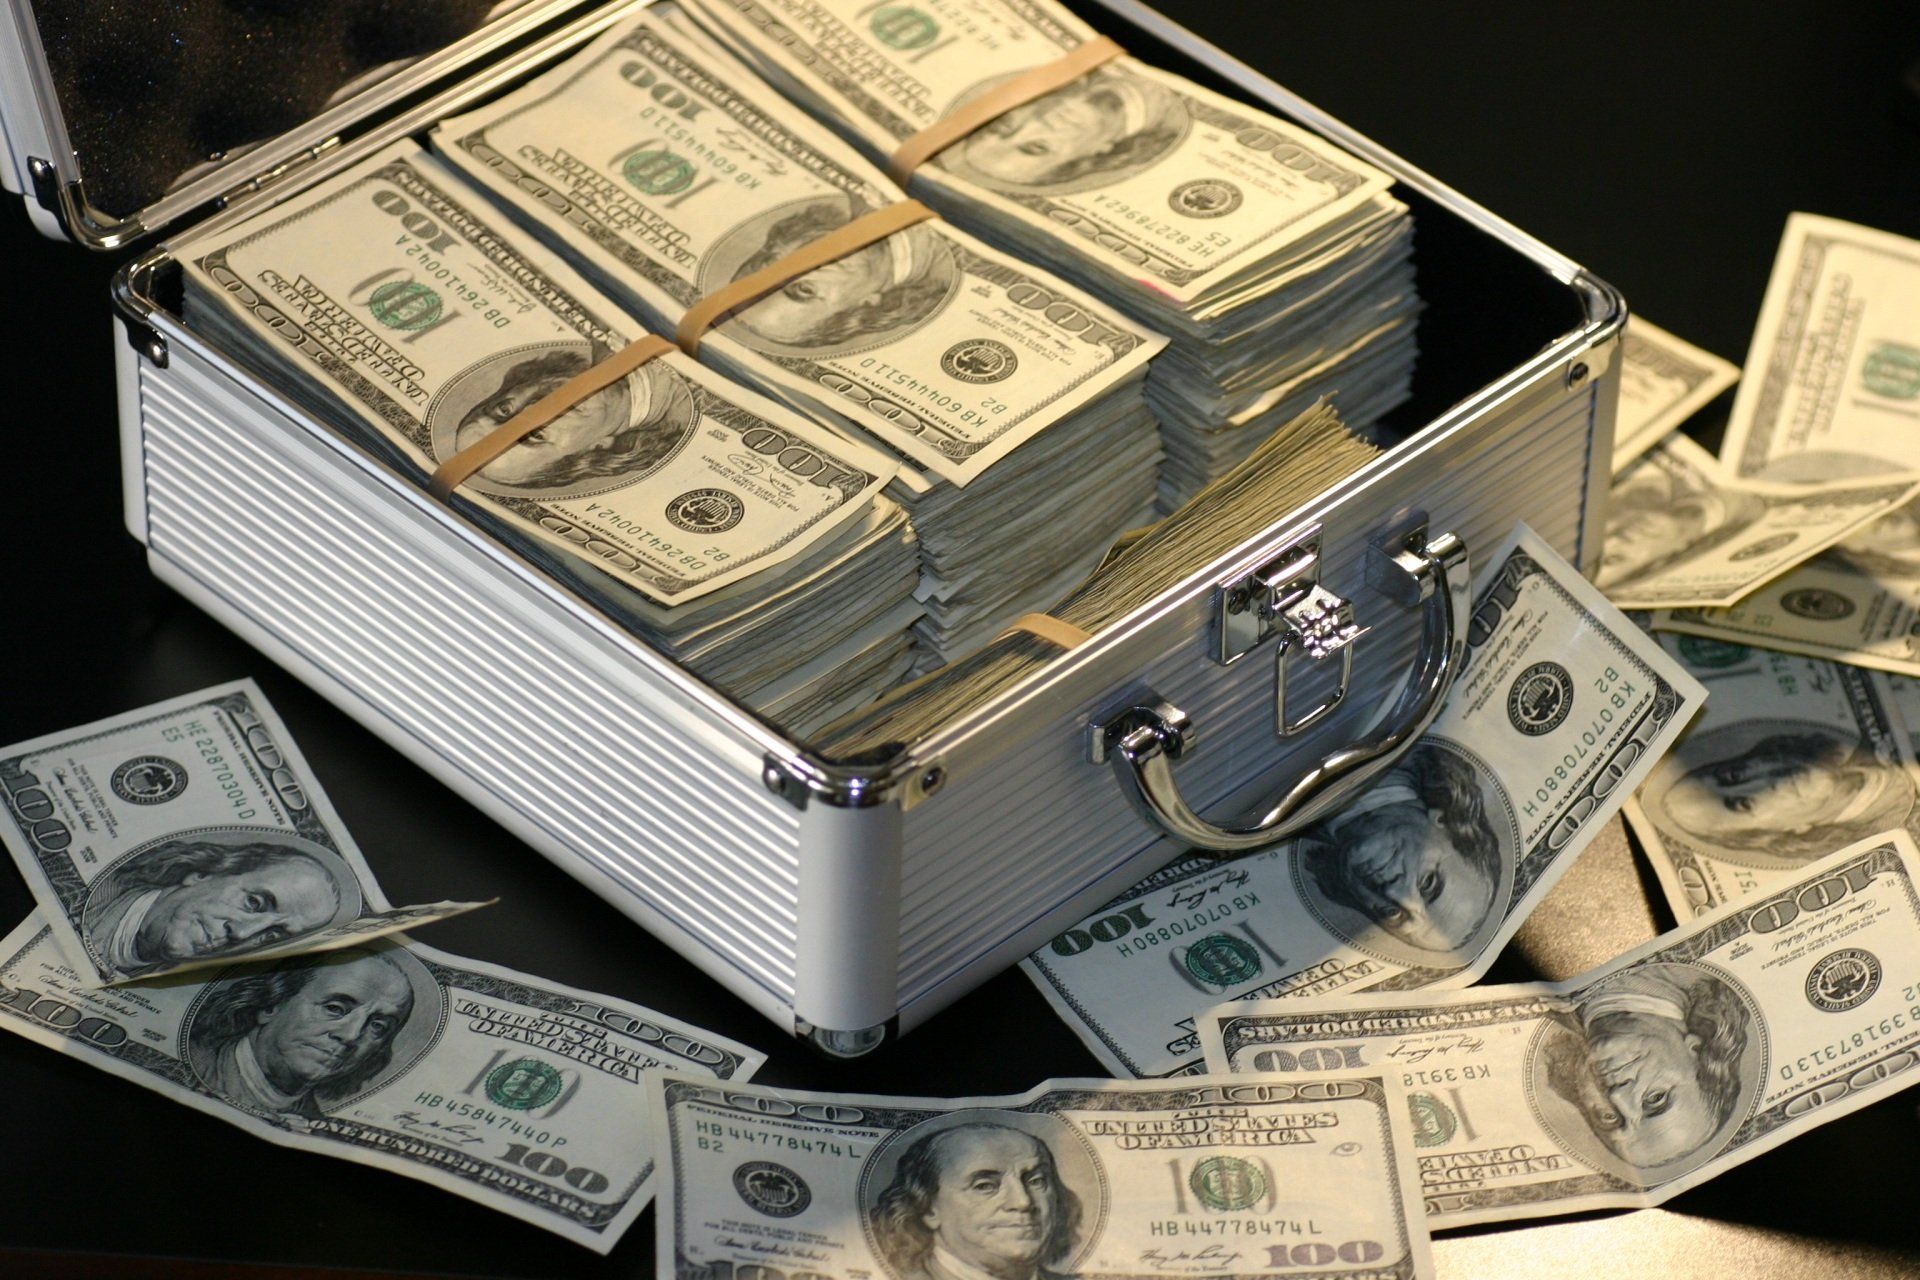 $100 bills in a briefcase